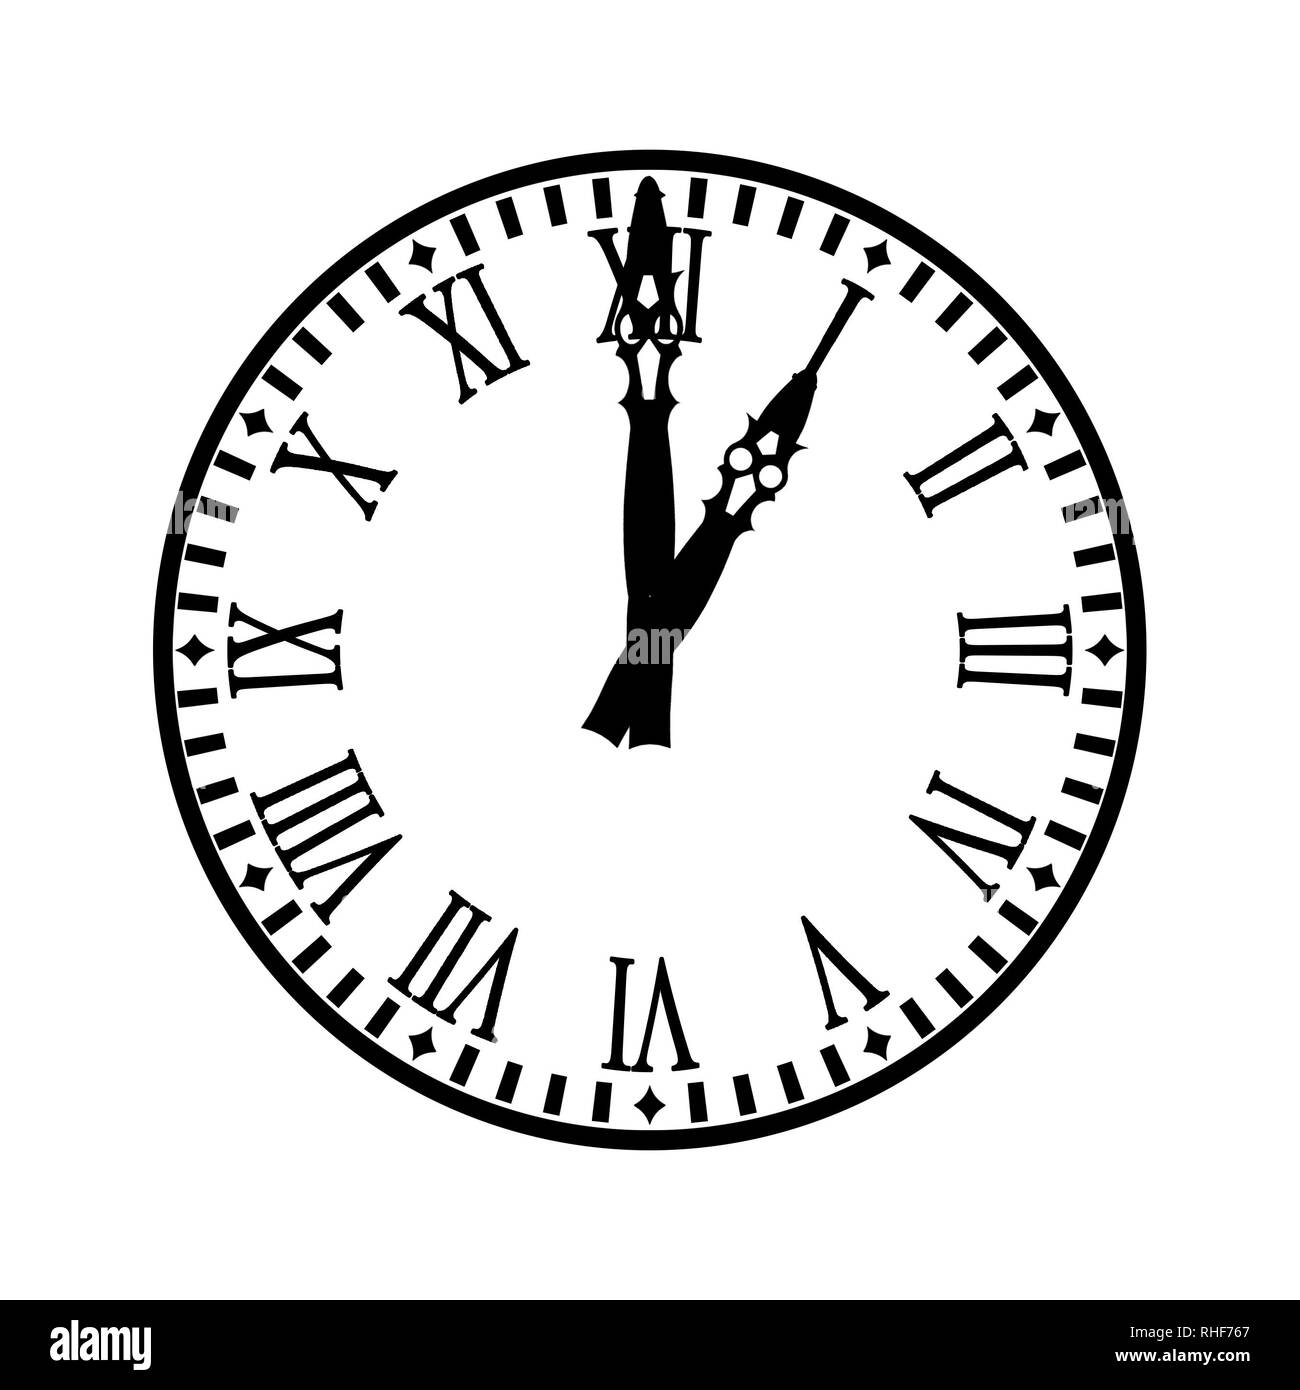 Uhr mit Anzeige für Stunde und Minute Indikator, dass one o'clock Stockfoto